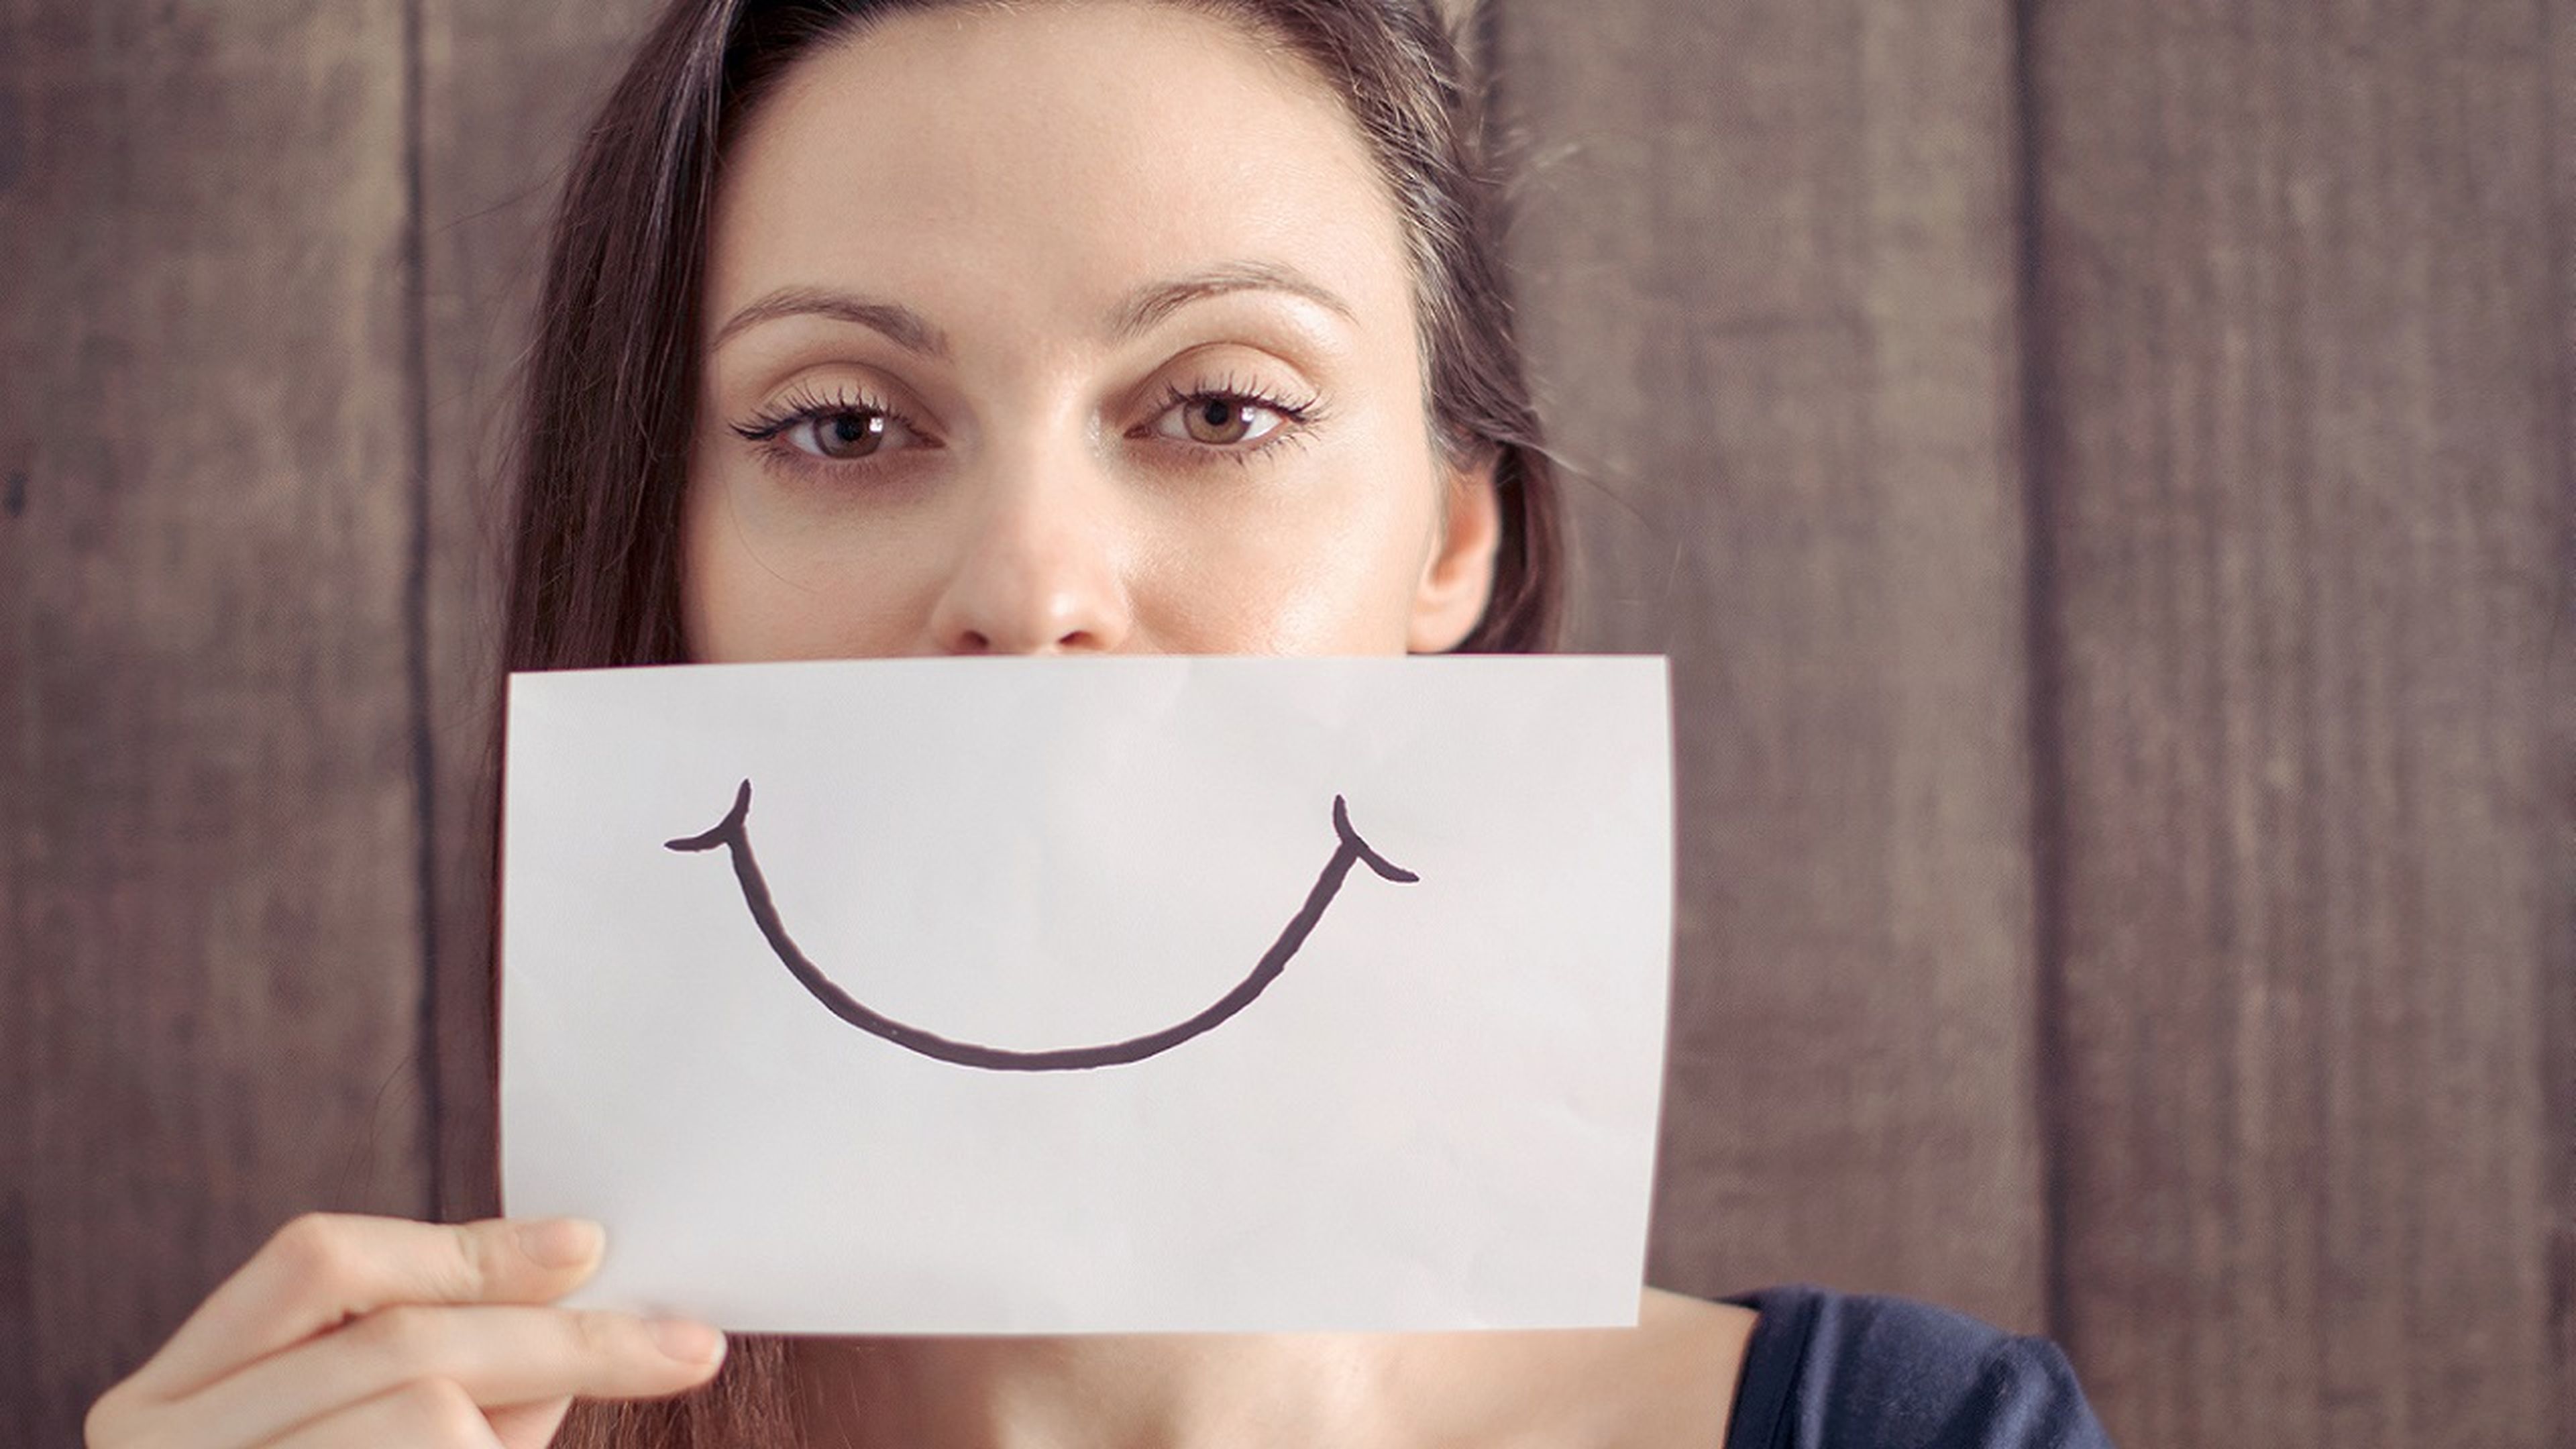 Los 5 alimentos que debes evitar para tener una sonrisa perfecta, según la OMS